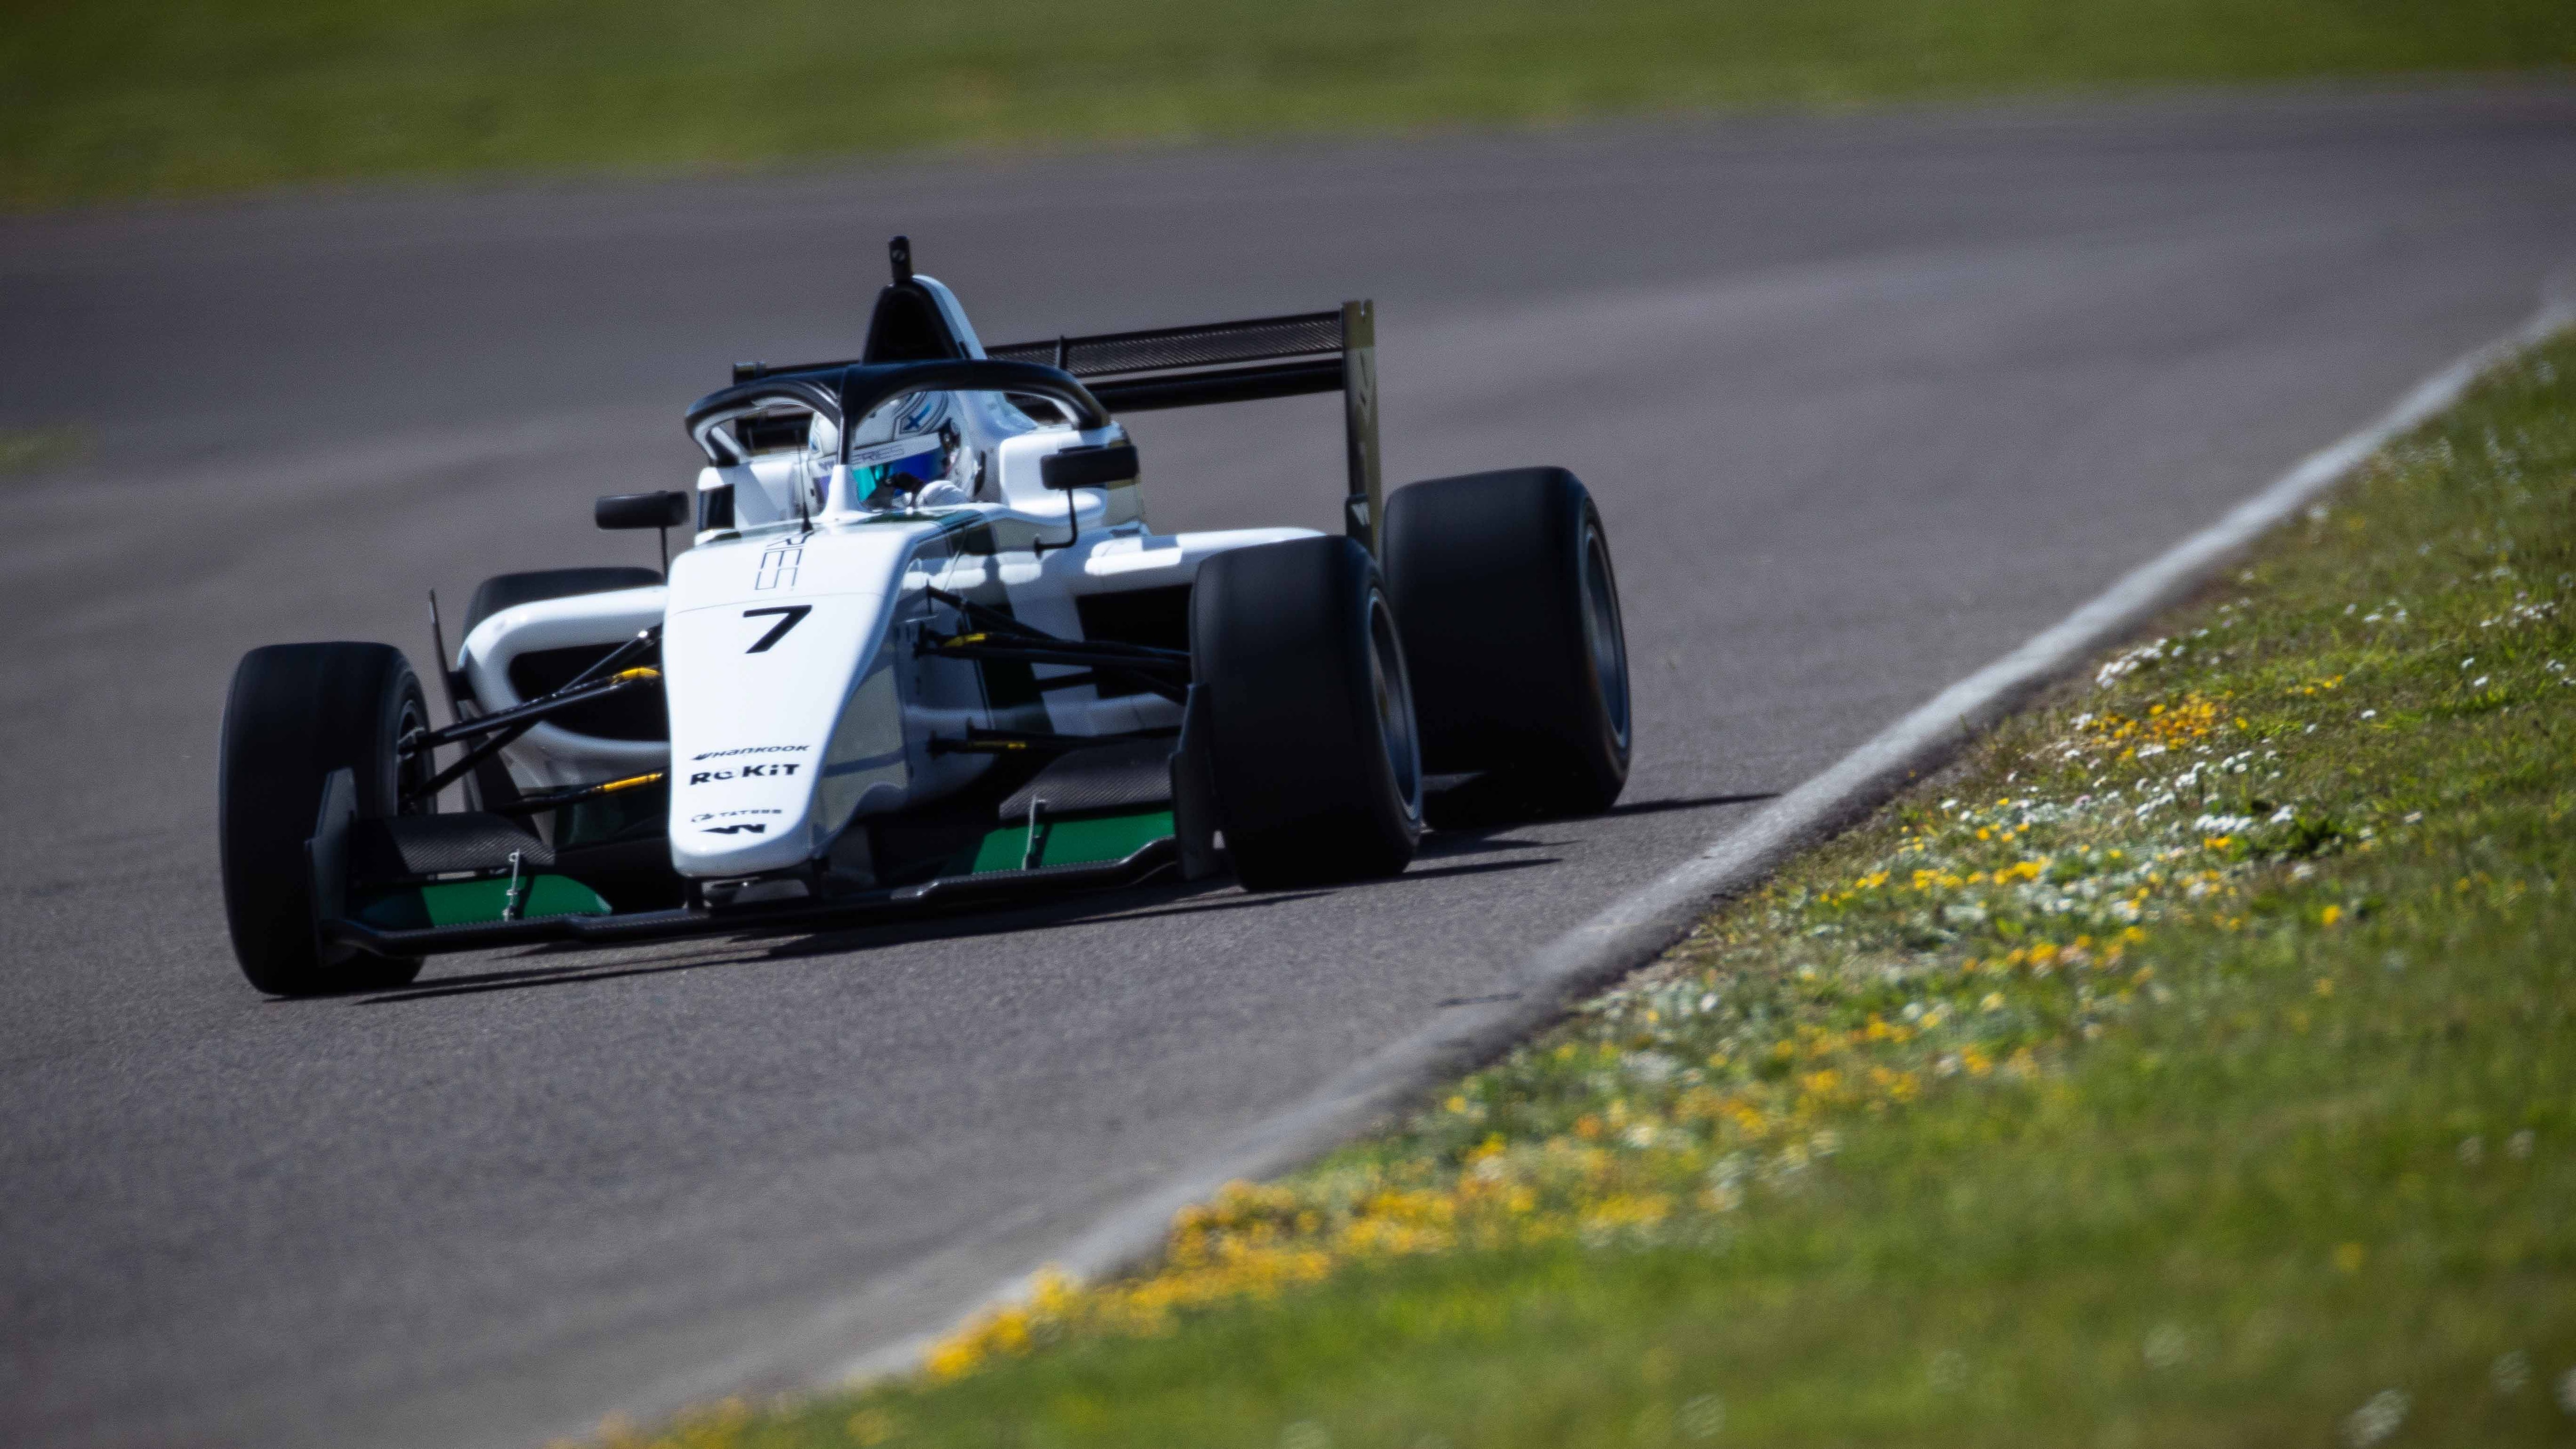 Emma Kimiläinen kjører W-serien Formel 3 racingbil